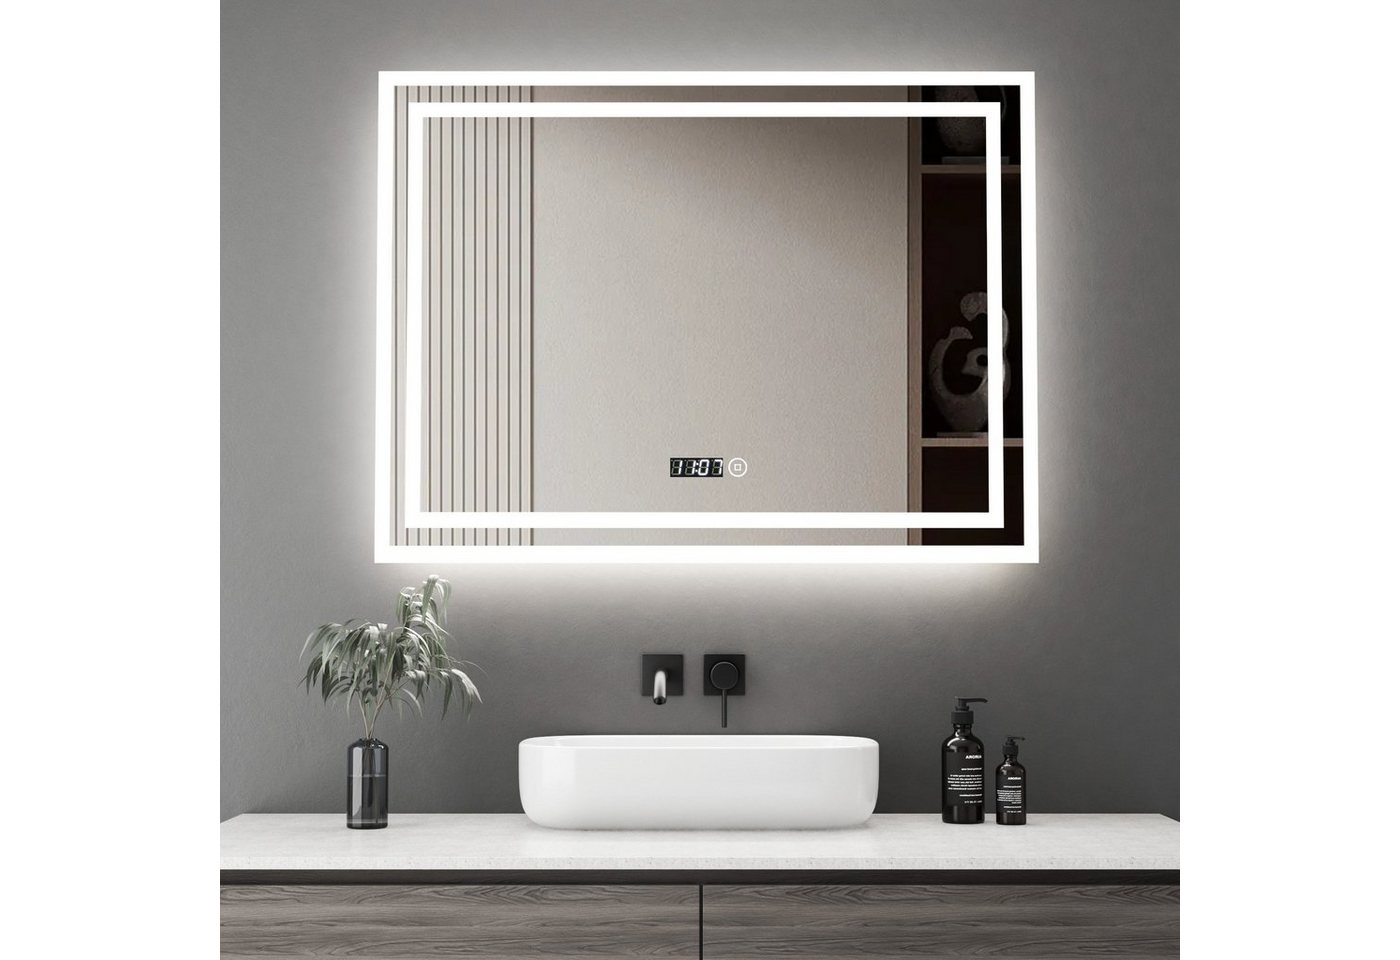 WDWRITTI Wandspiegel Badspiegel Led 80x60 mit Uhr 3Lichtfarben Helligkeit dimmbar (Spiegel mit beleuchtung, Speicherfunktion), Energiesparend, IP44 von WDWRITTI